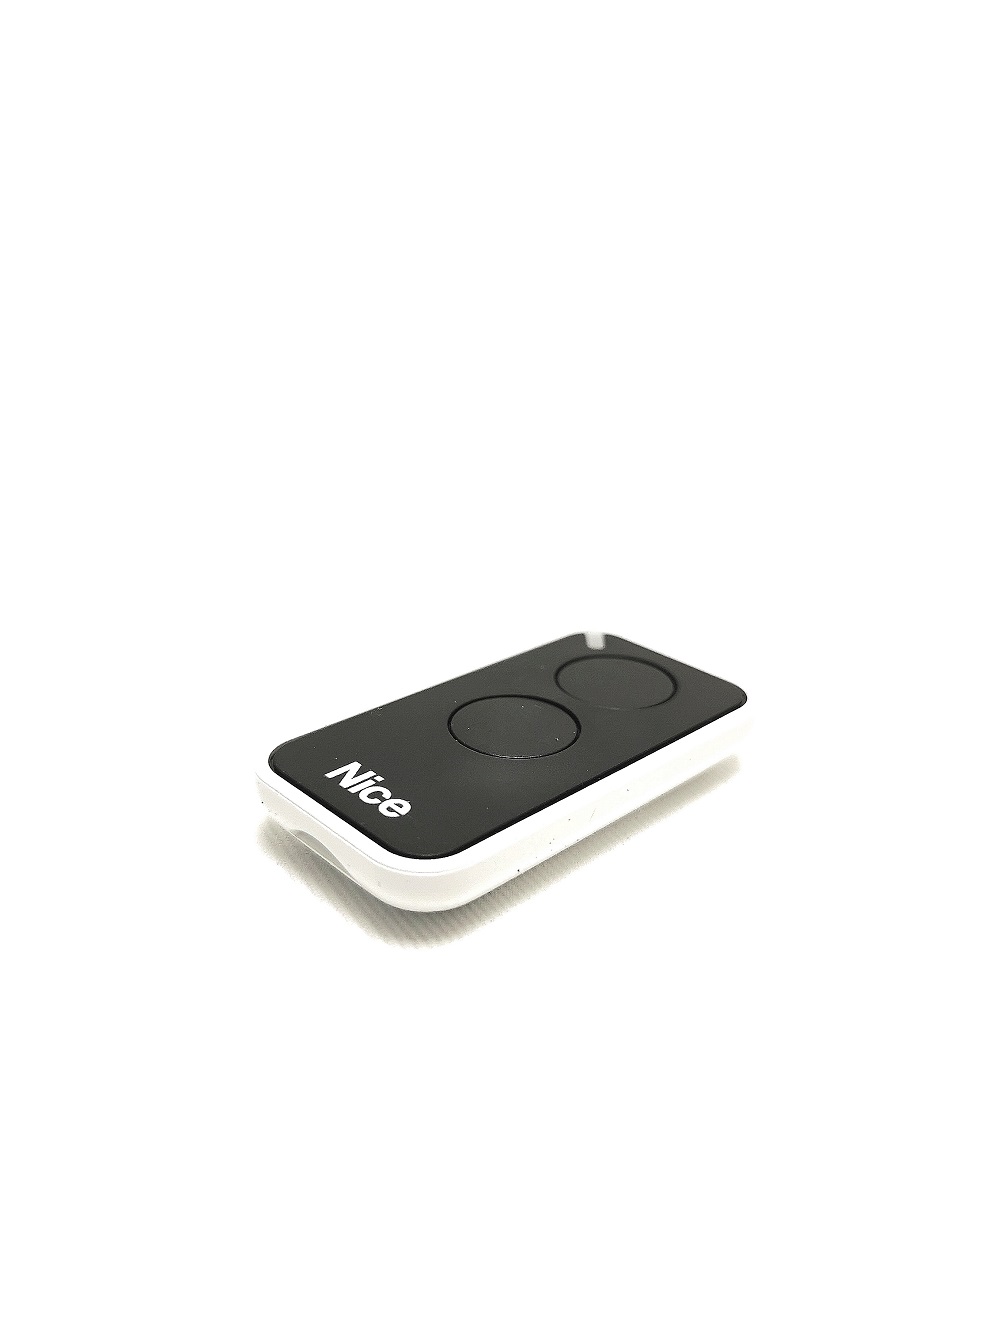 Télécommande Nice INTI2 noire miniaturisée et ergonomique - 2 canaux Fréquence 433Mhz - Programmation simple permettant la gestion de tous les automatismes.